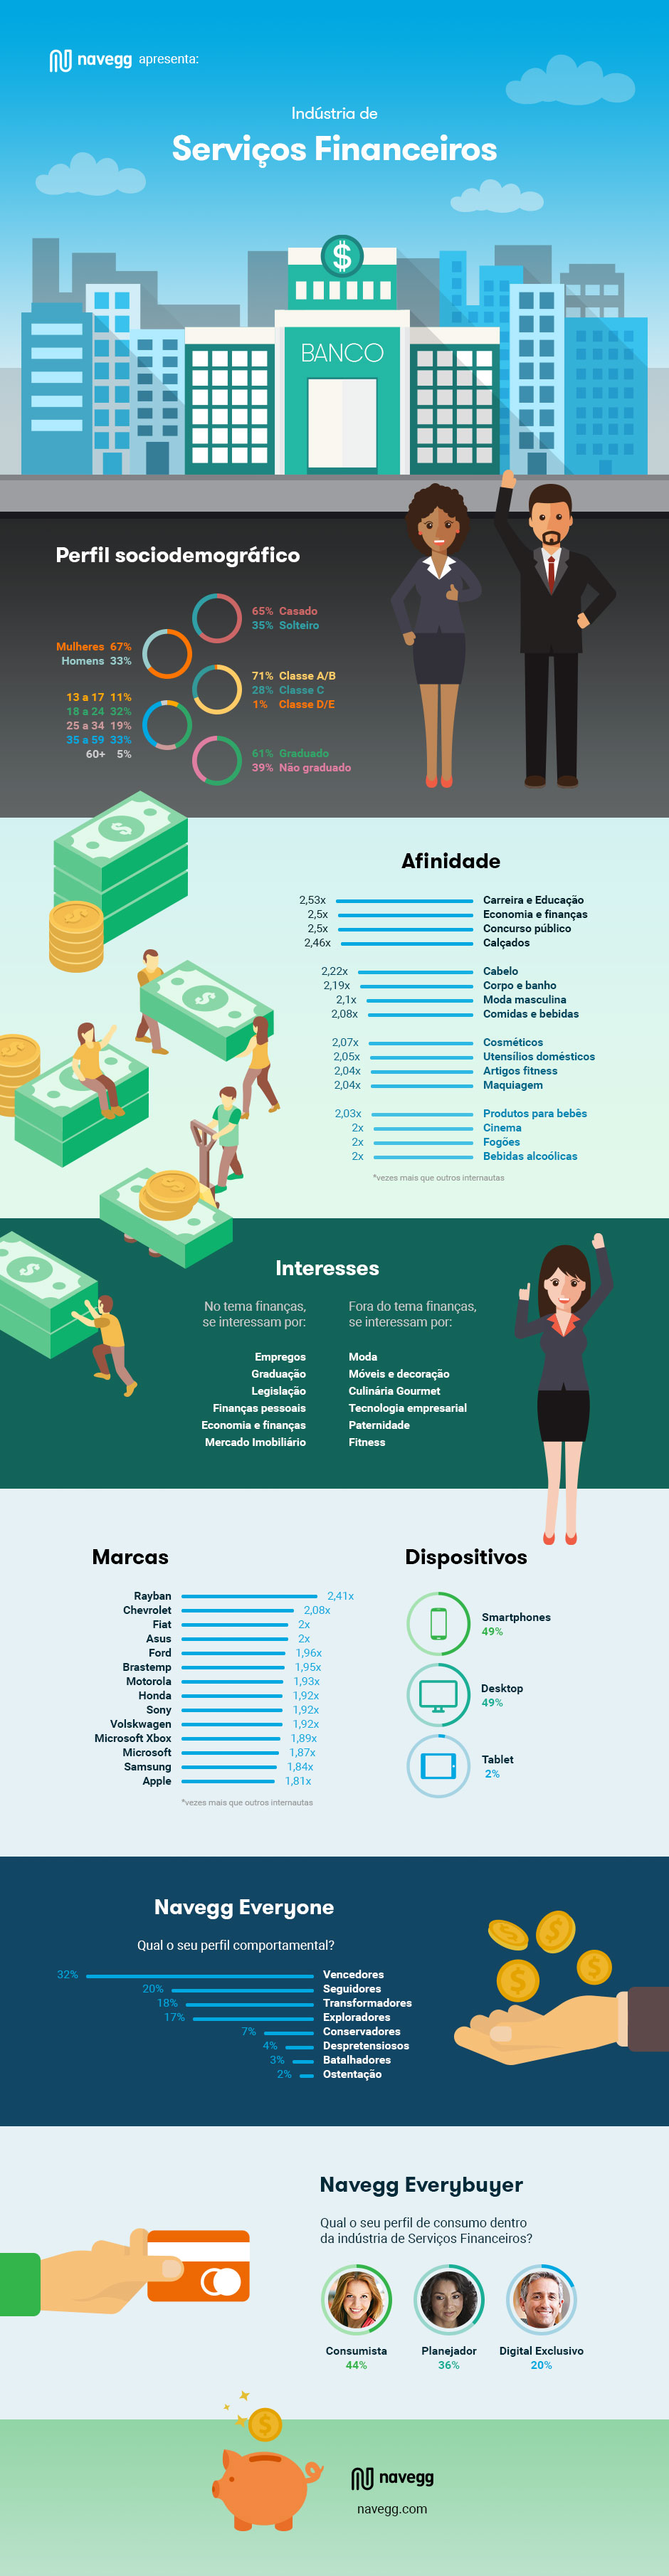 Infografico-O-perfil-dos-brasileiros-interessados-em-servicos-financeiros